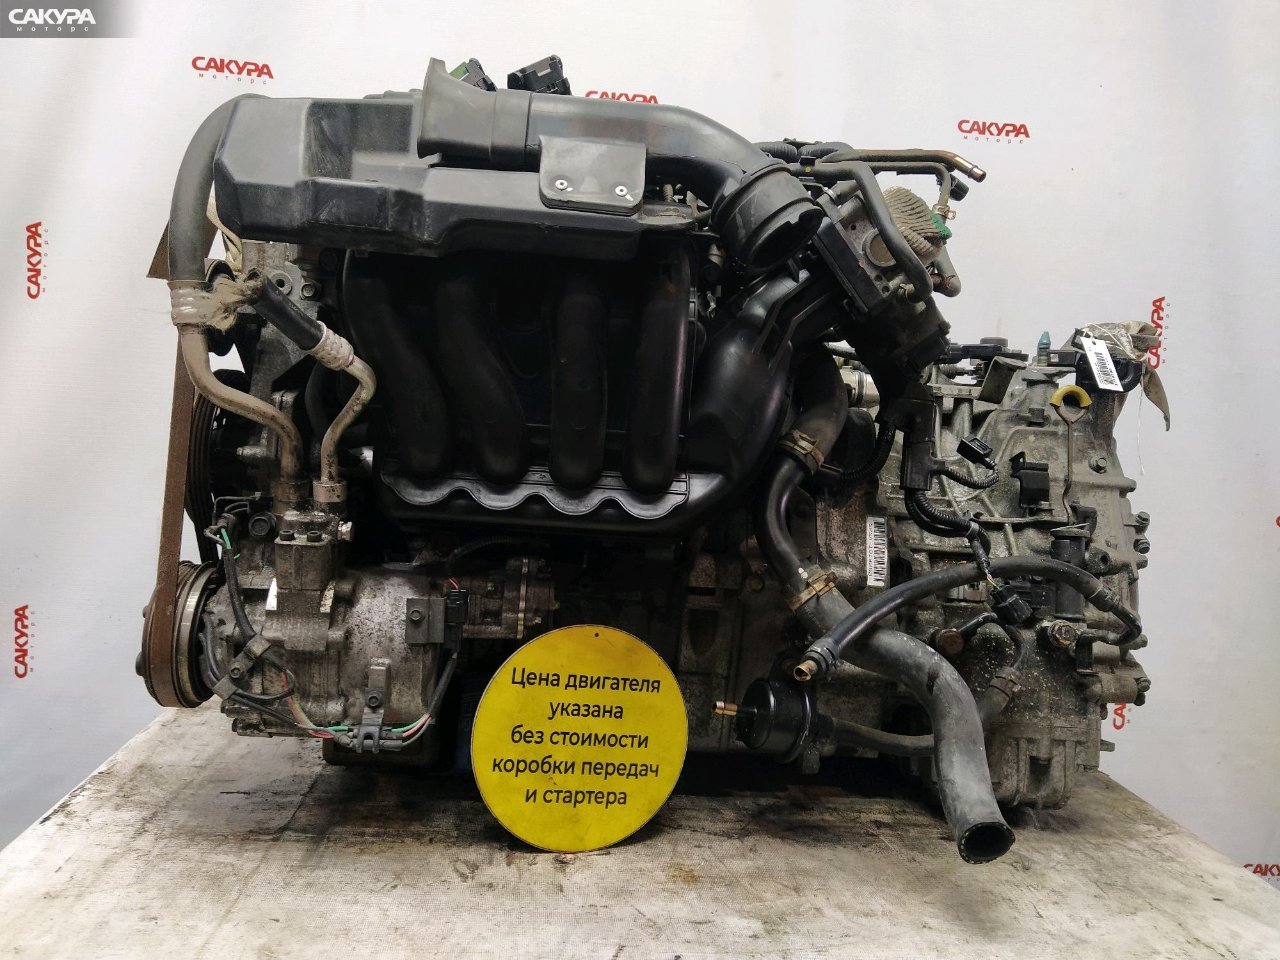 Двигатель Honda Civic Hybrid FD3 LDA: купить в Сакура Моторс Красноярск.